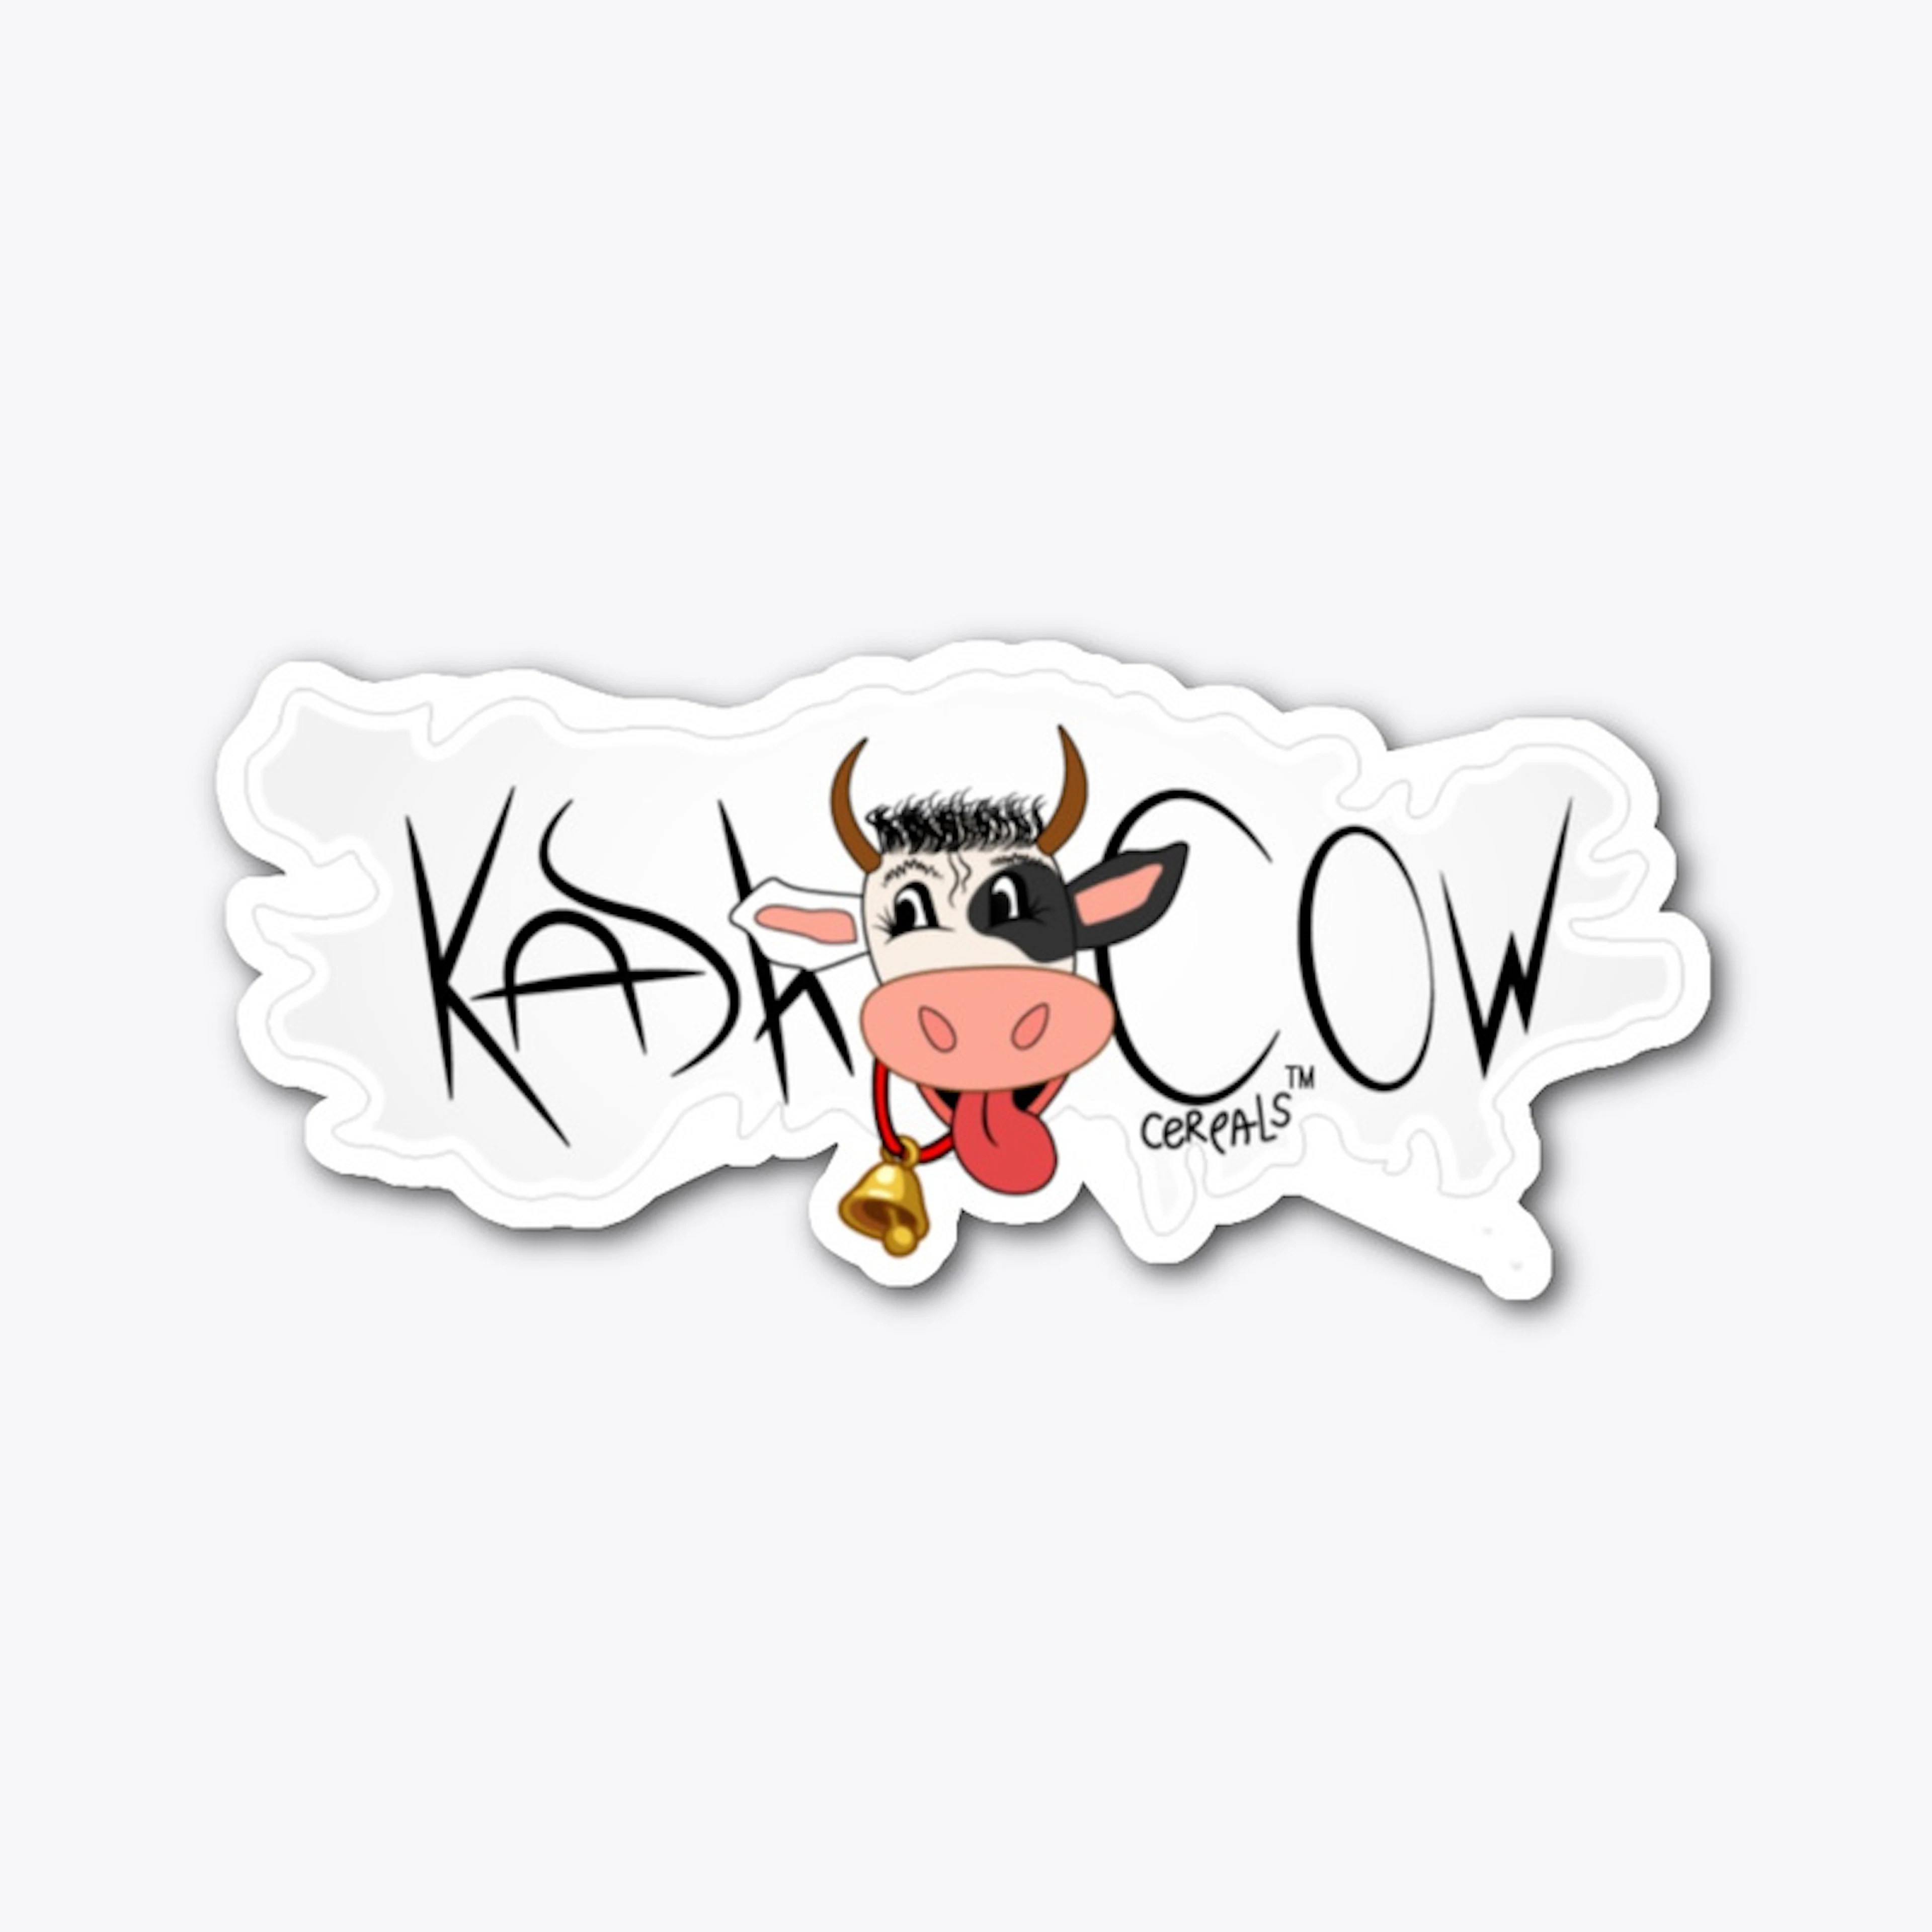 Kash Cow Cereals sticker